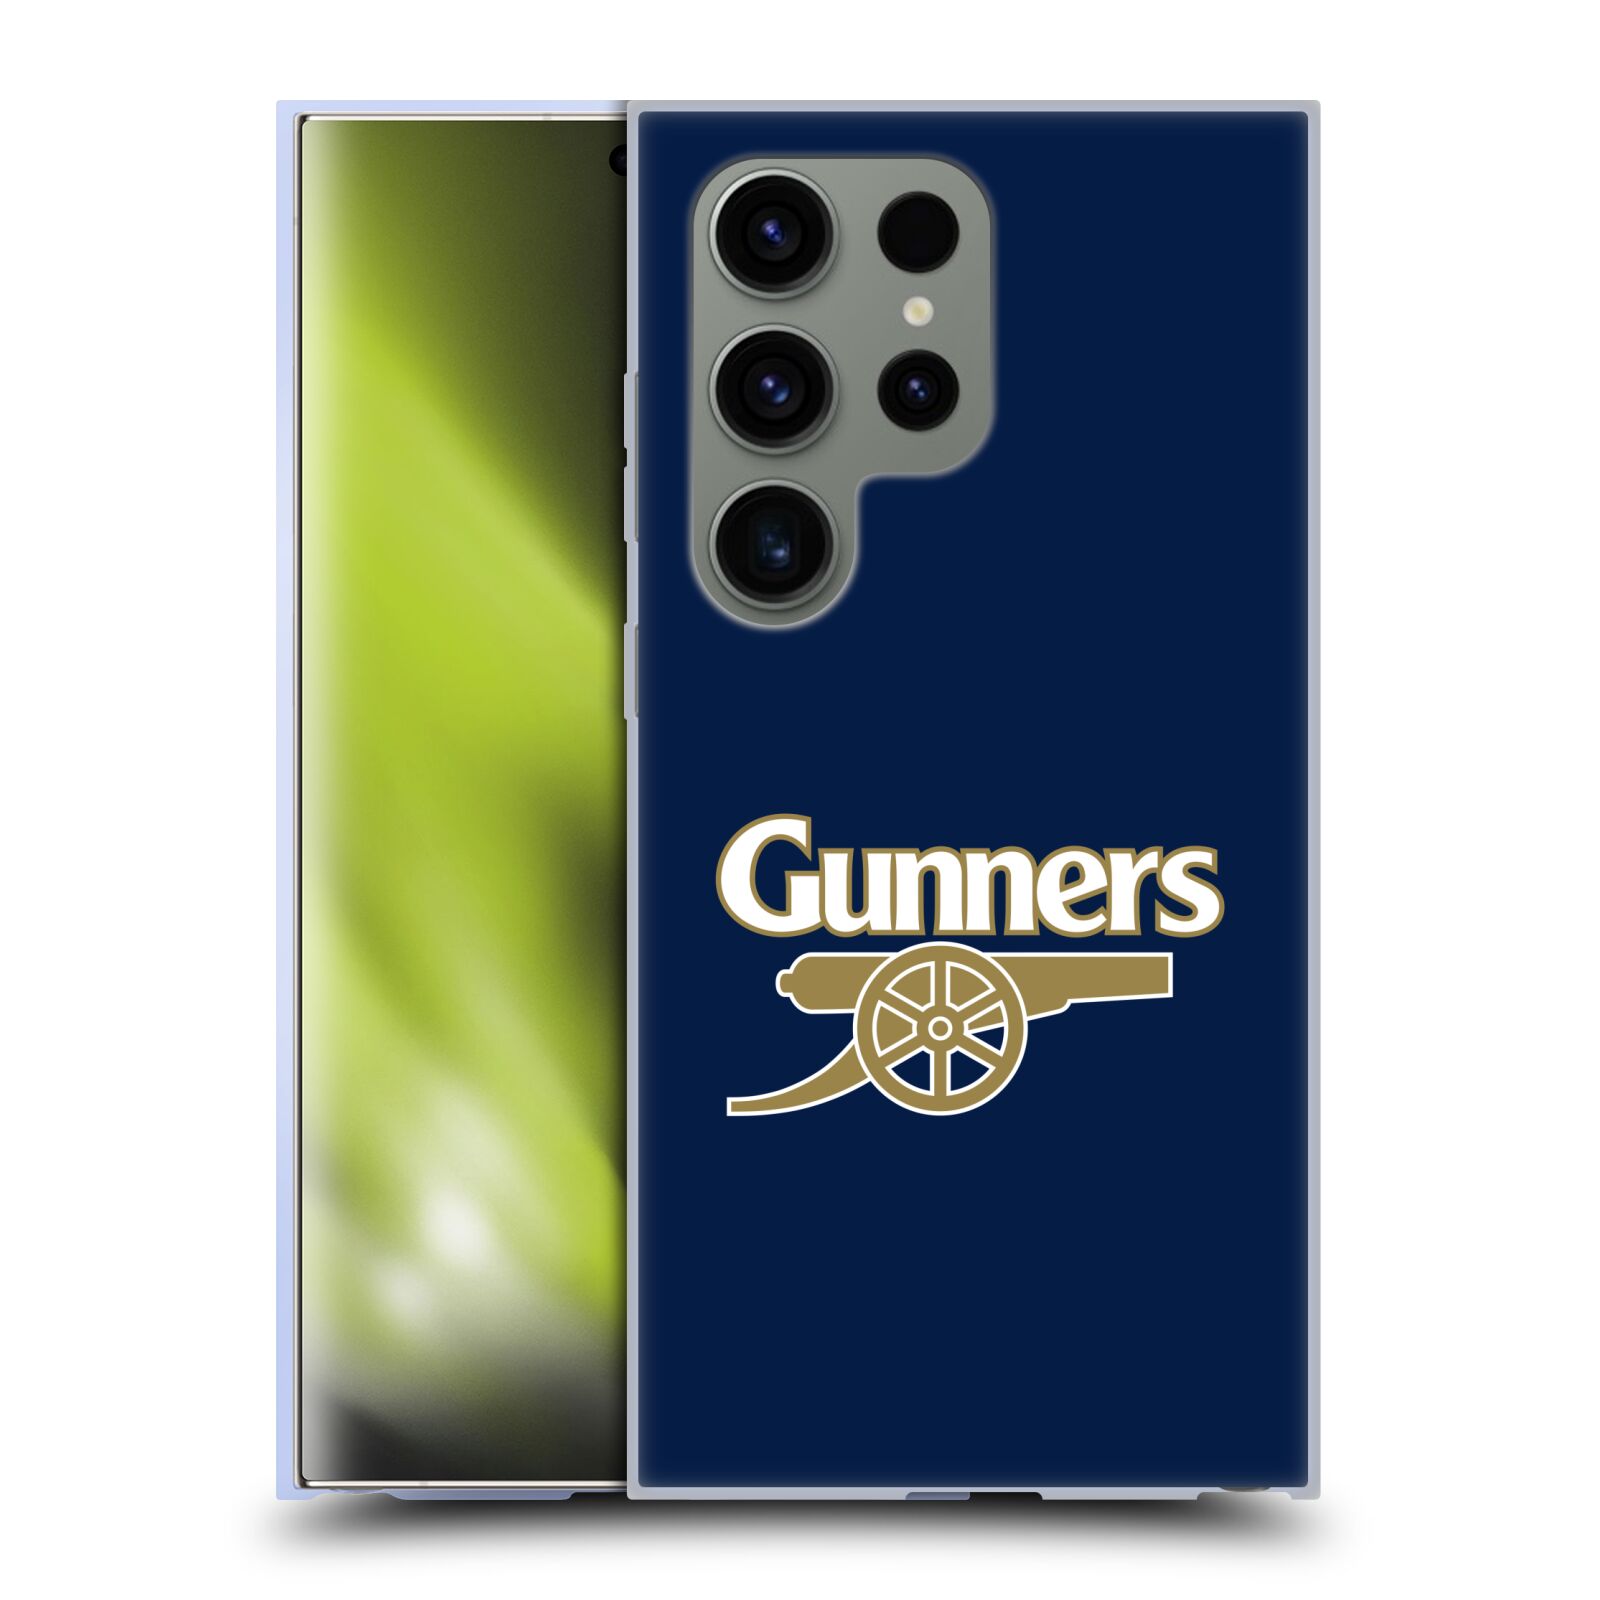 Silikonové lesklé pouzdro na mobil Samsung Galaxy S24 Ultra - Head Case - Arsenal FC - Gunners (Silikonový kryt, obal, pouzdro na mobilní telefon s motivem klubu Arsenal FC - Gunners pro Samsung Galaxy S24 Ultra)